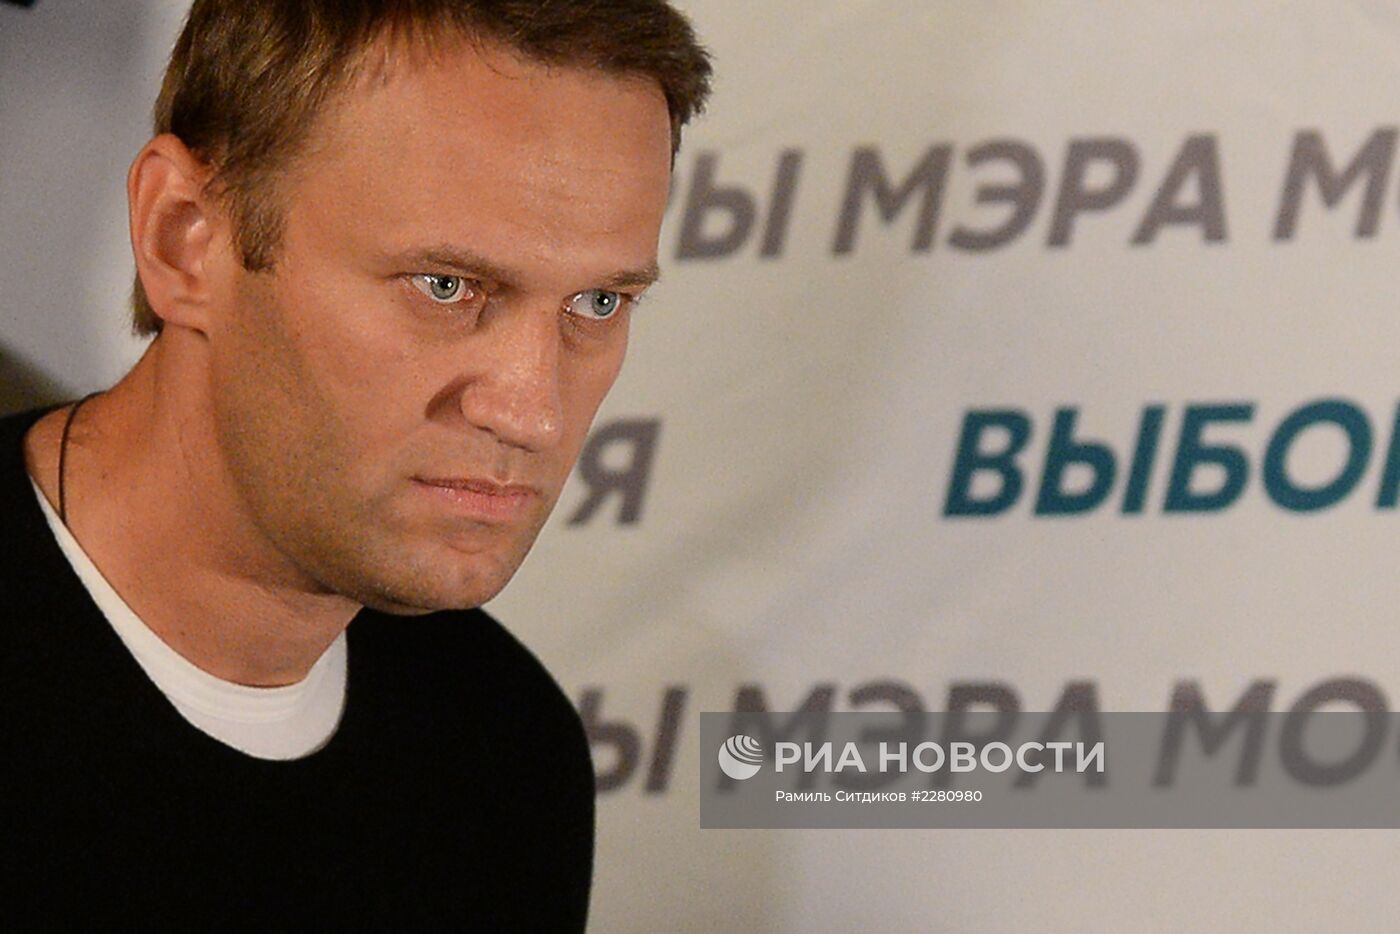 Пресс-конференция кандидата в мэры Москвы А.Навального